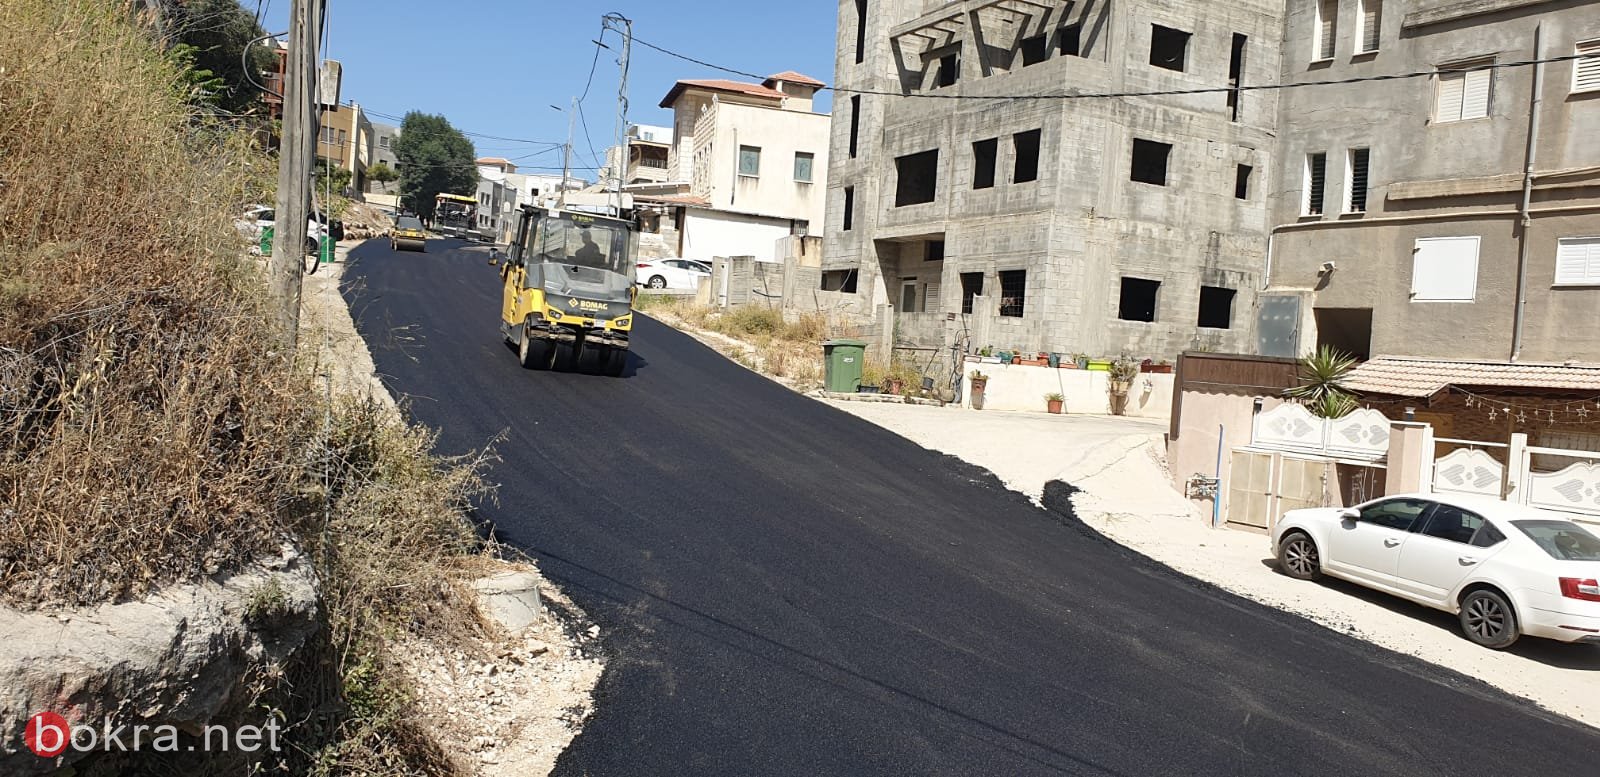 الناصرة: مشروع تعبيد شوارع المدينة يبدأ...حي البشارة يعبد اليوم-7